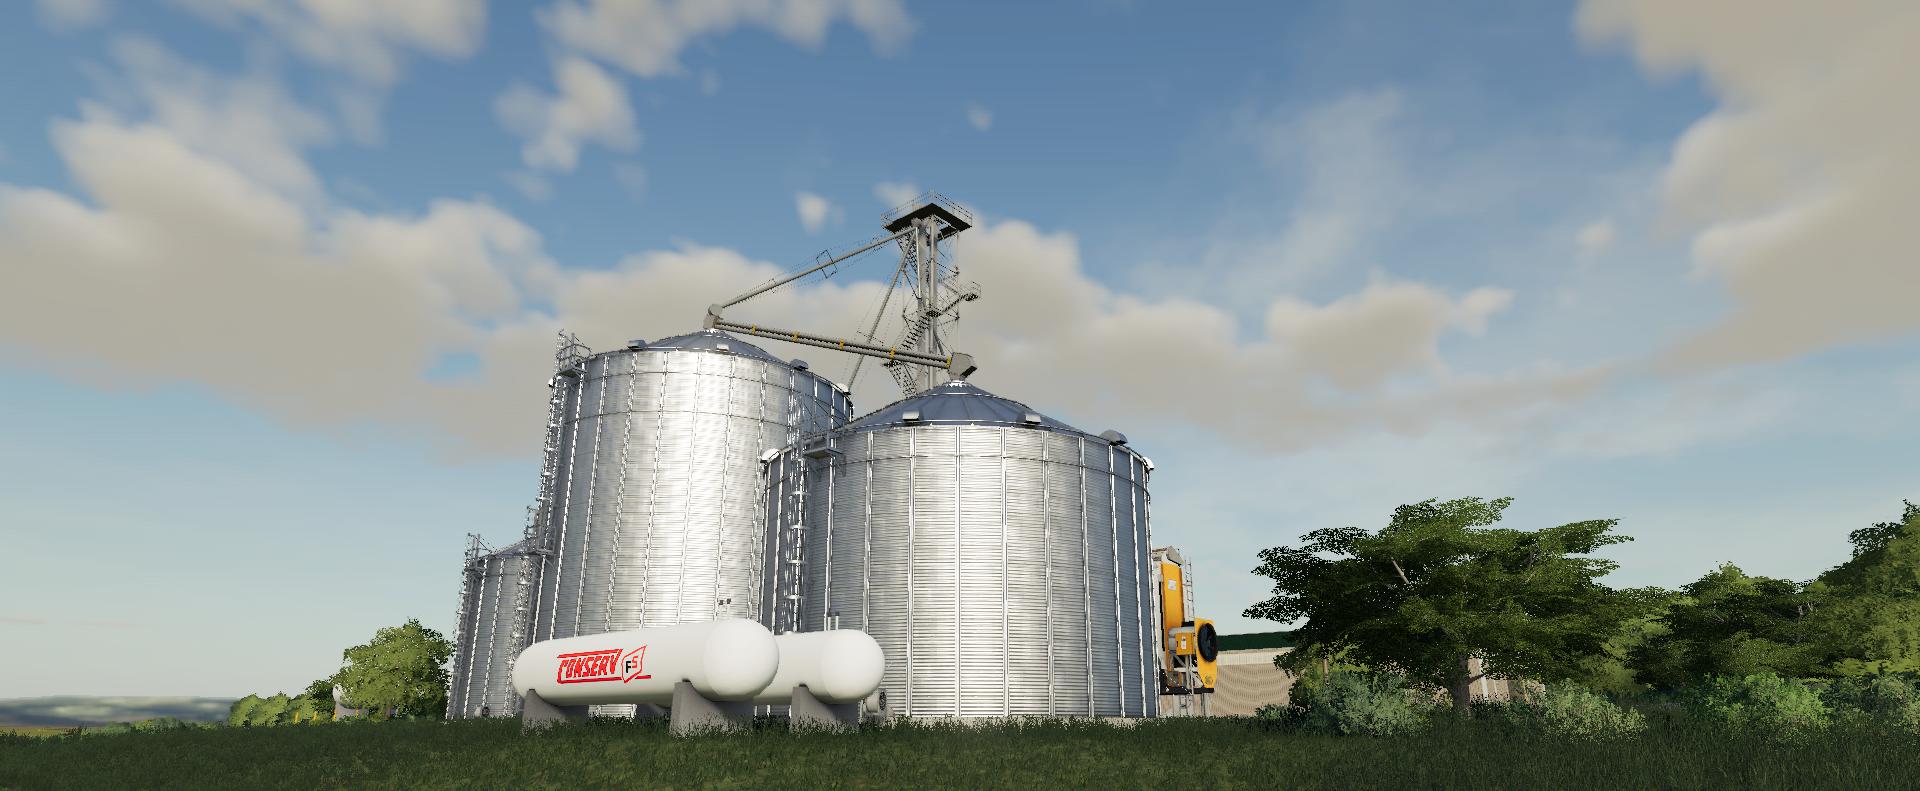 Gsi Grain Storage Bins V10 Fs19 Farming Simulator 19 Mod Fs19 Mod 4993